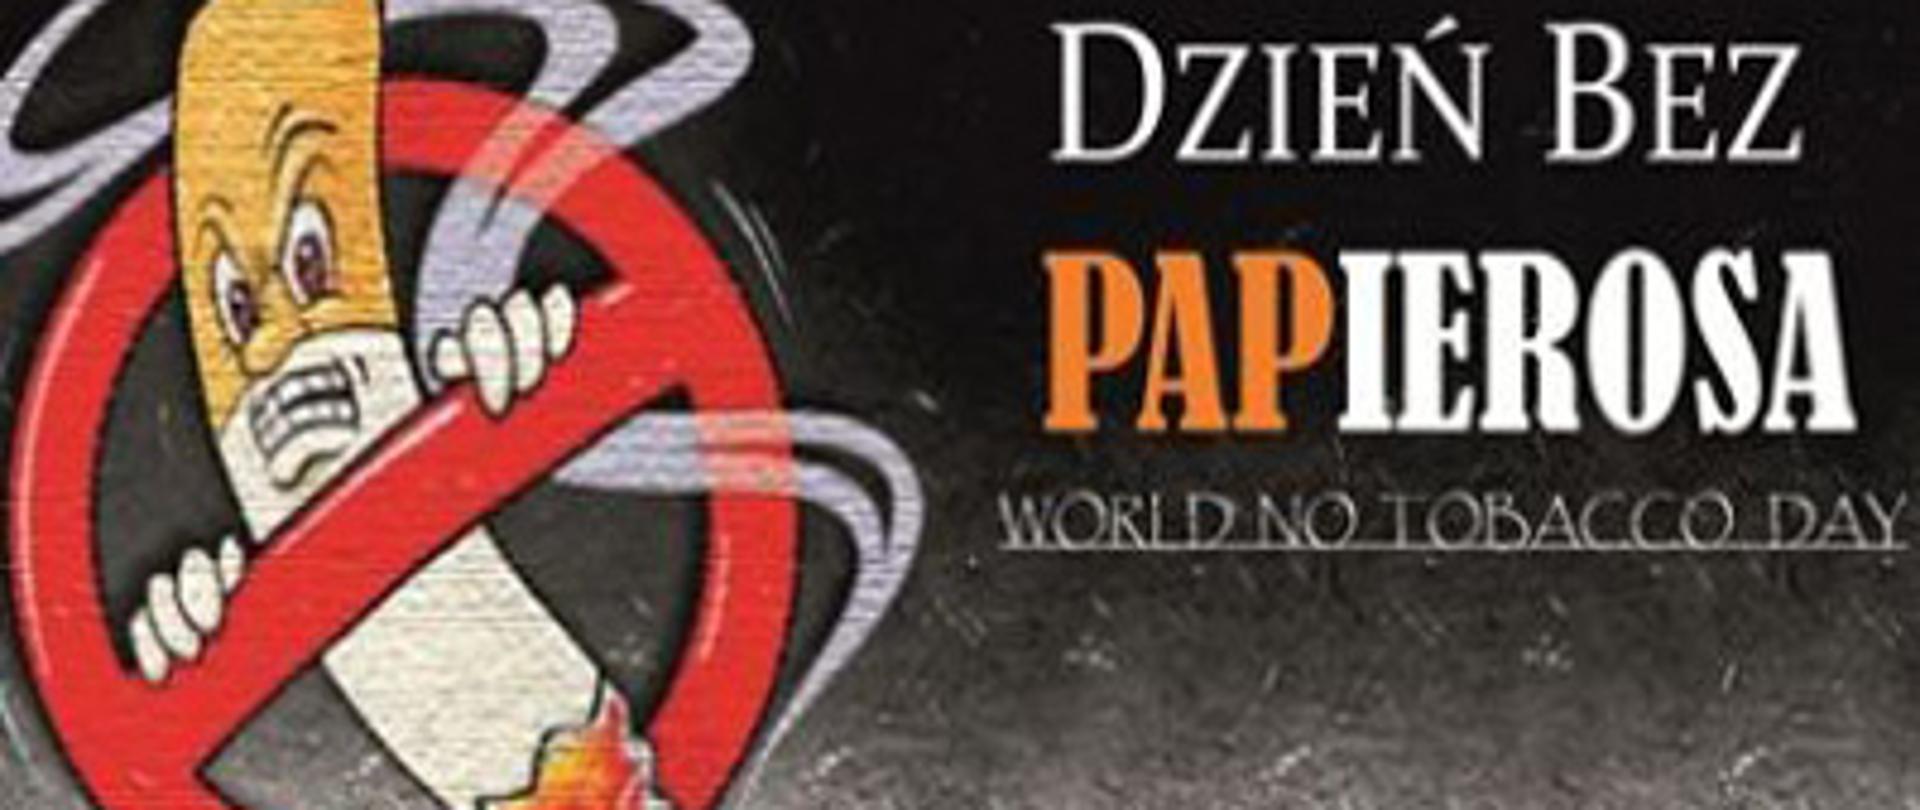 Światowy Dzień Bez Papierosa - napis